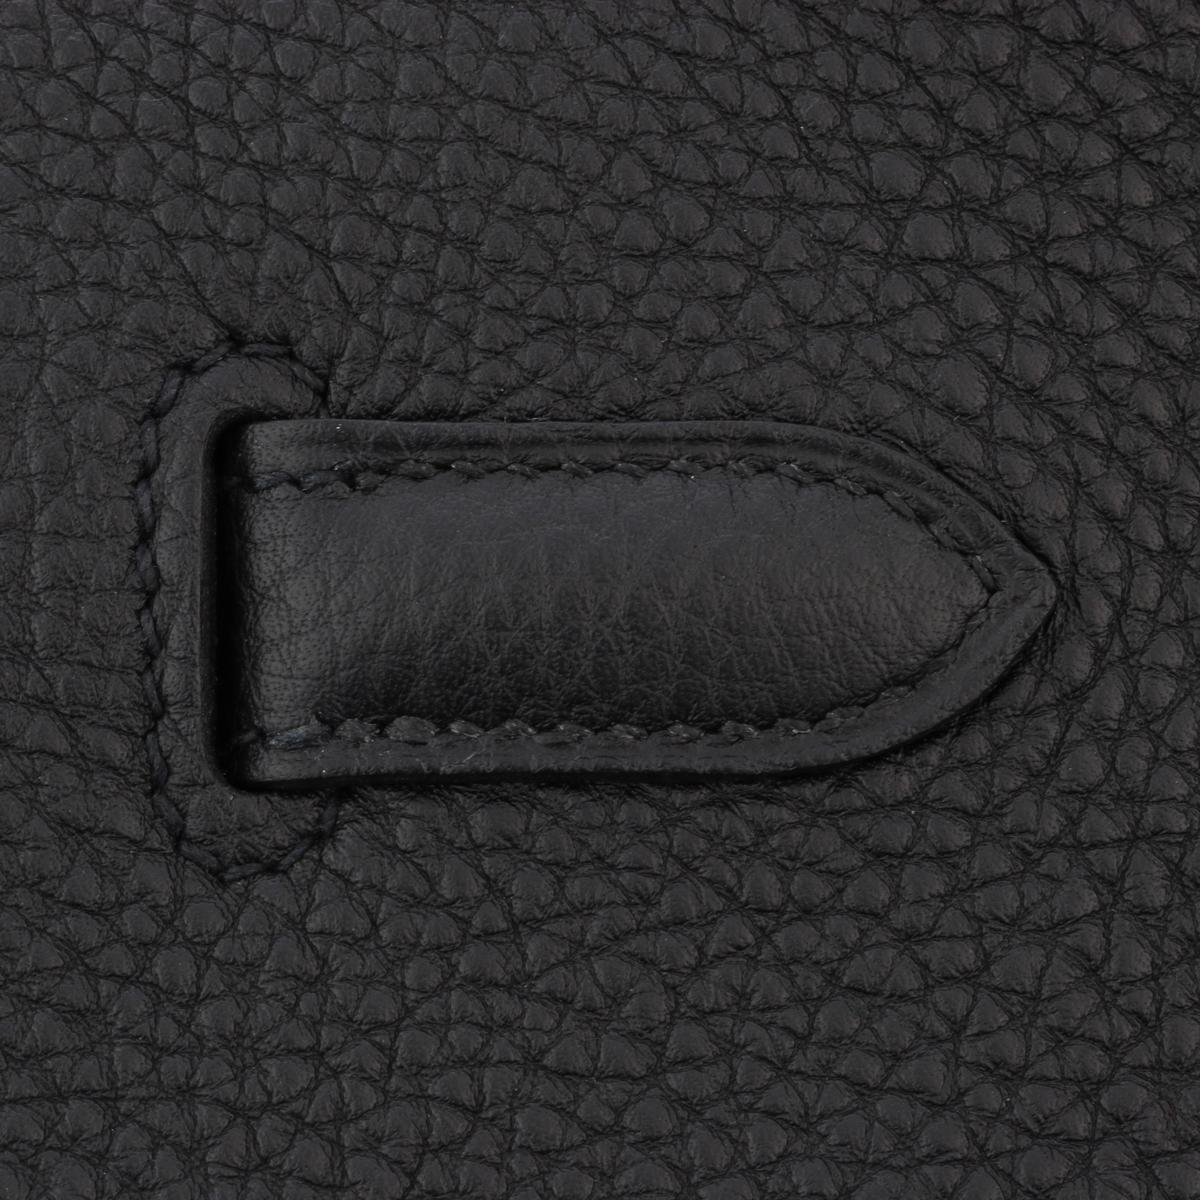 Hermès Birkin Bag 40cm Black Togo Leather with Gold Hardware Stamp N 2010 11